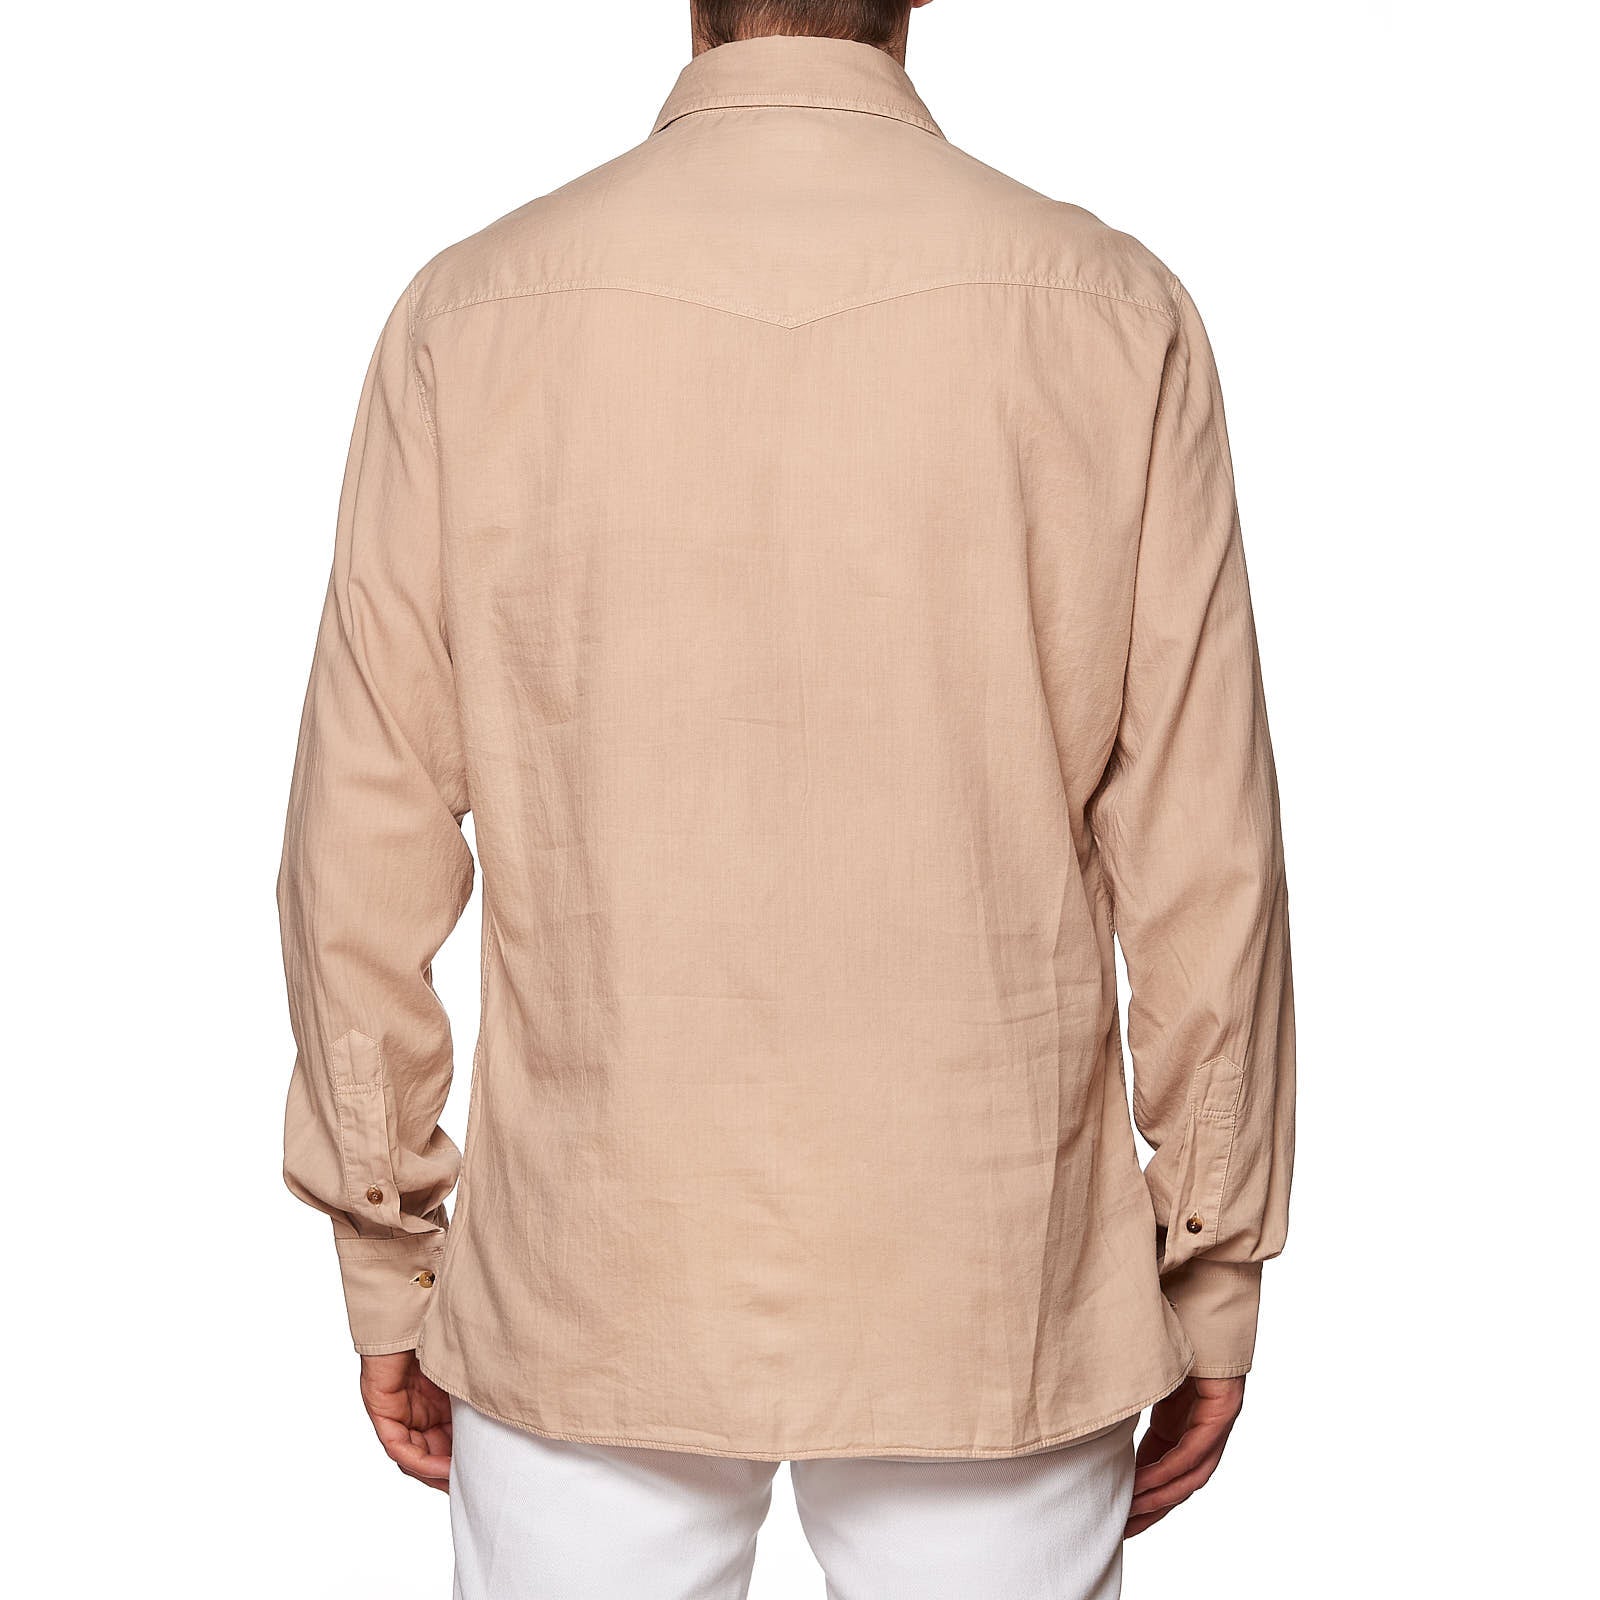 BRUNELLO CUCINELLI Beige Cotton Cutaway Collar Leisure Fit Casual Shirt NEW XL BRUNELLO CUCINELLI